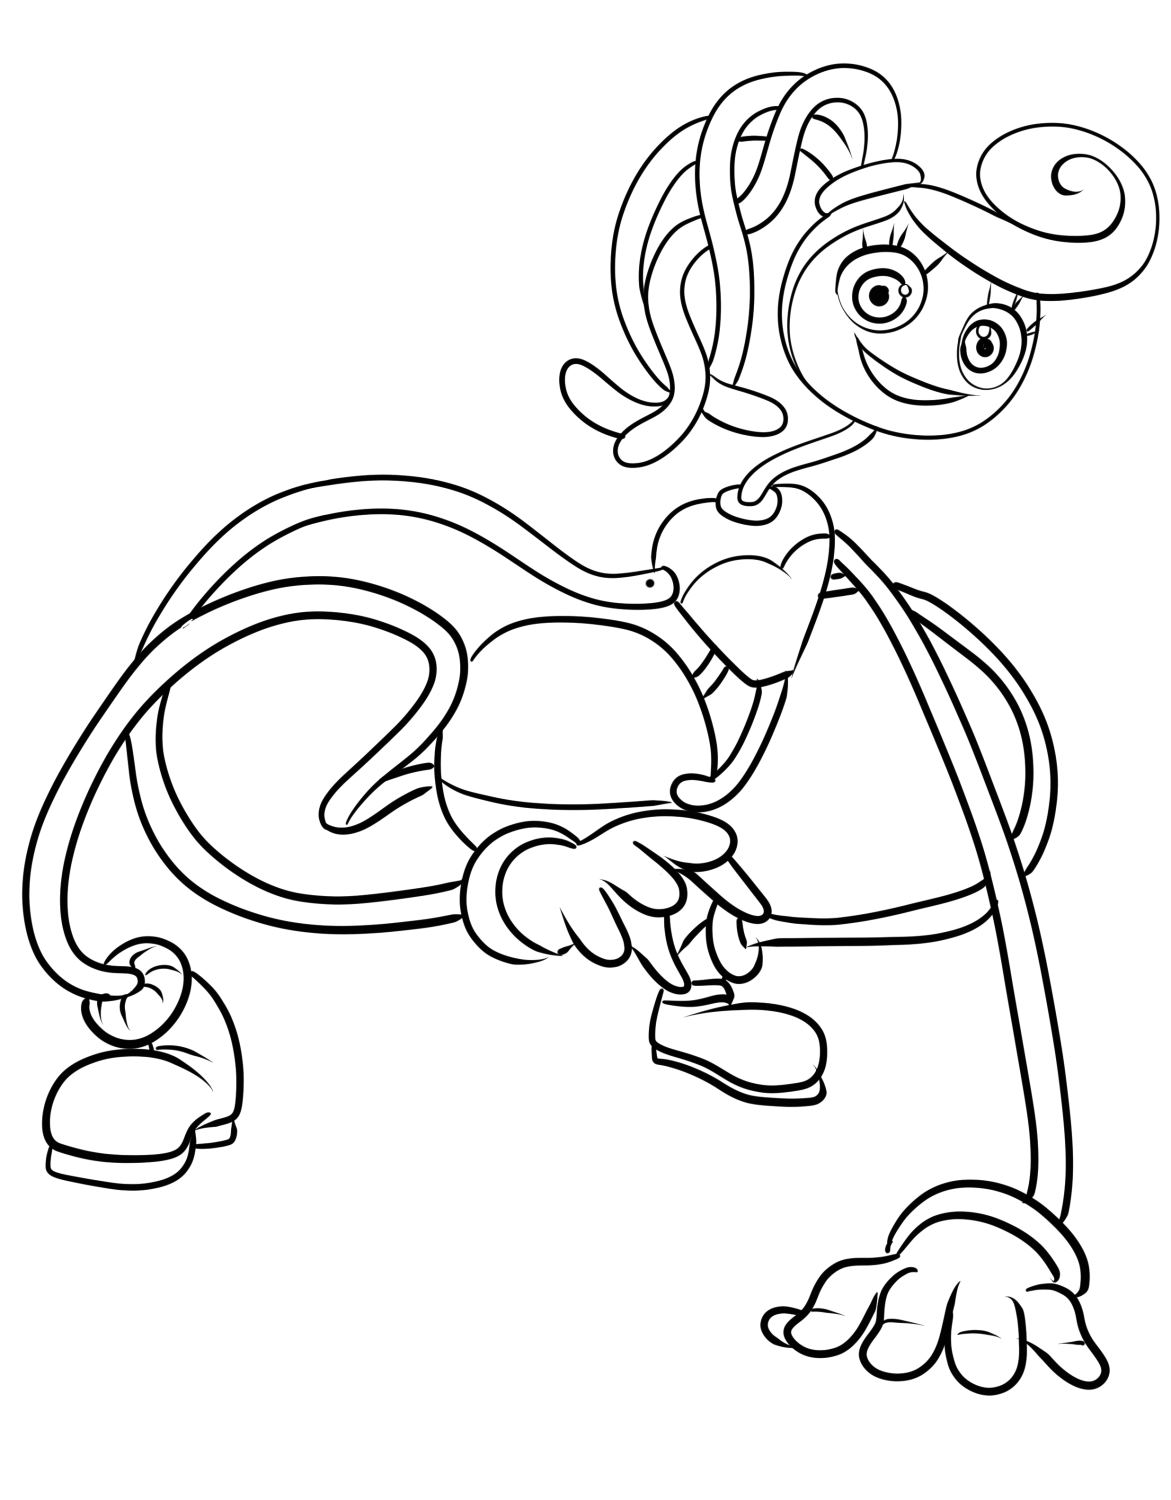 Dibujo de Mommy Long Legs de Poppy Playtime para imprimir y colorear